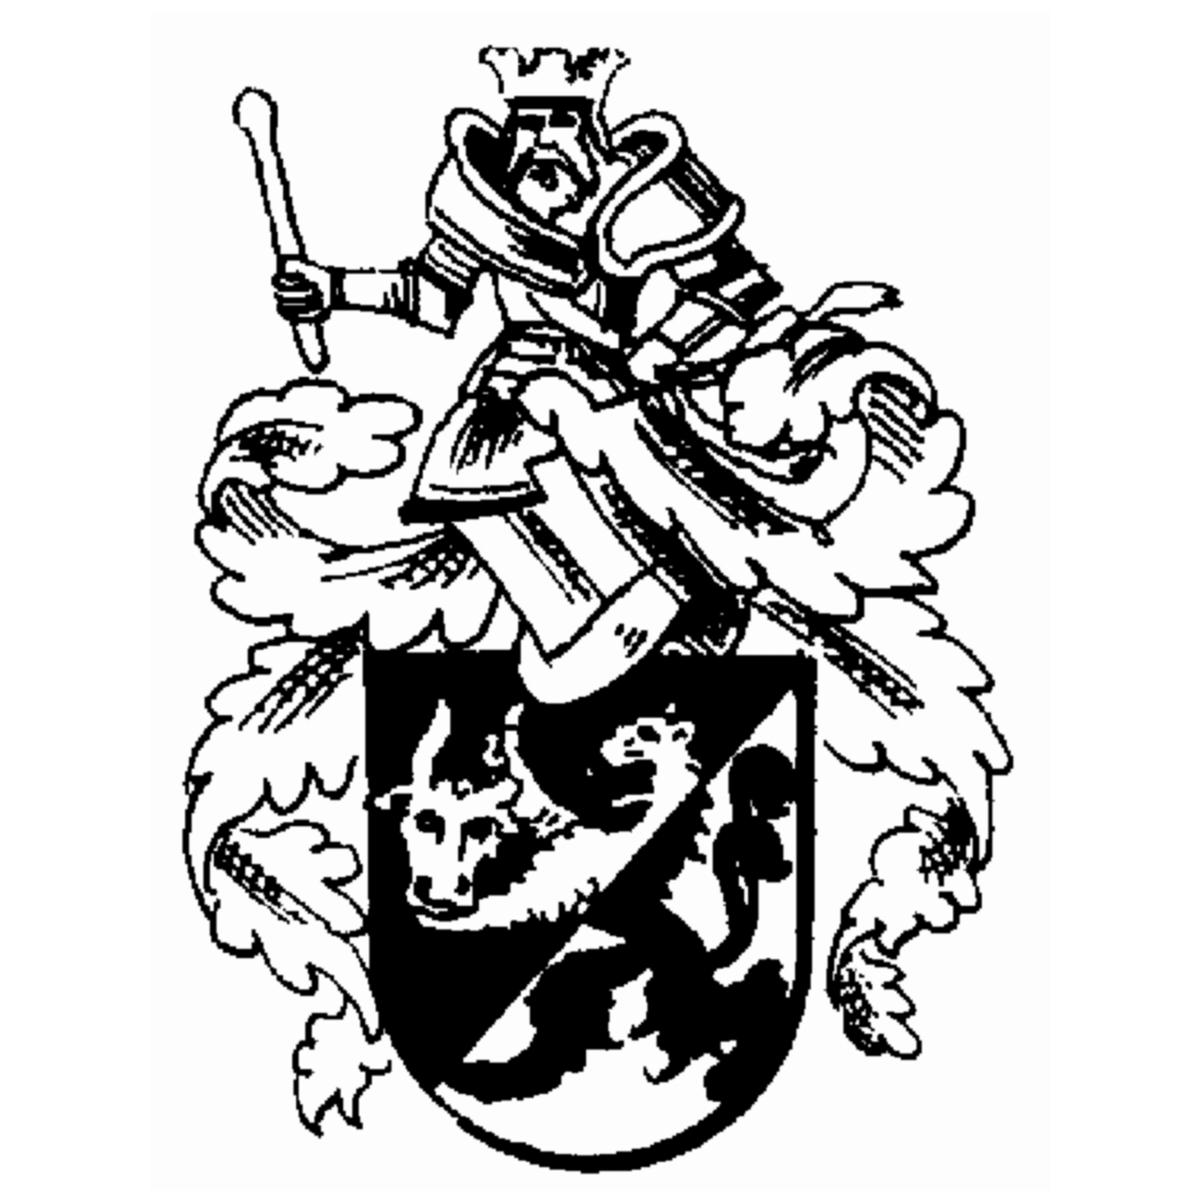 Wappen der Familie Bolle